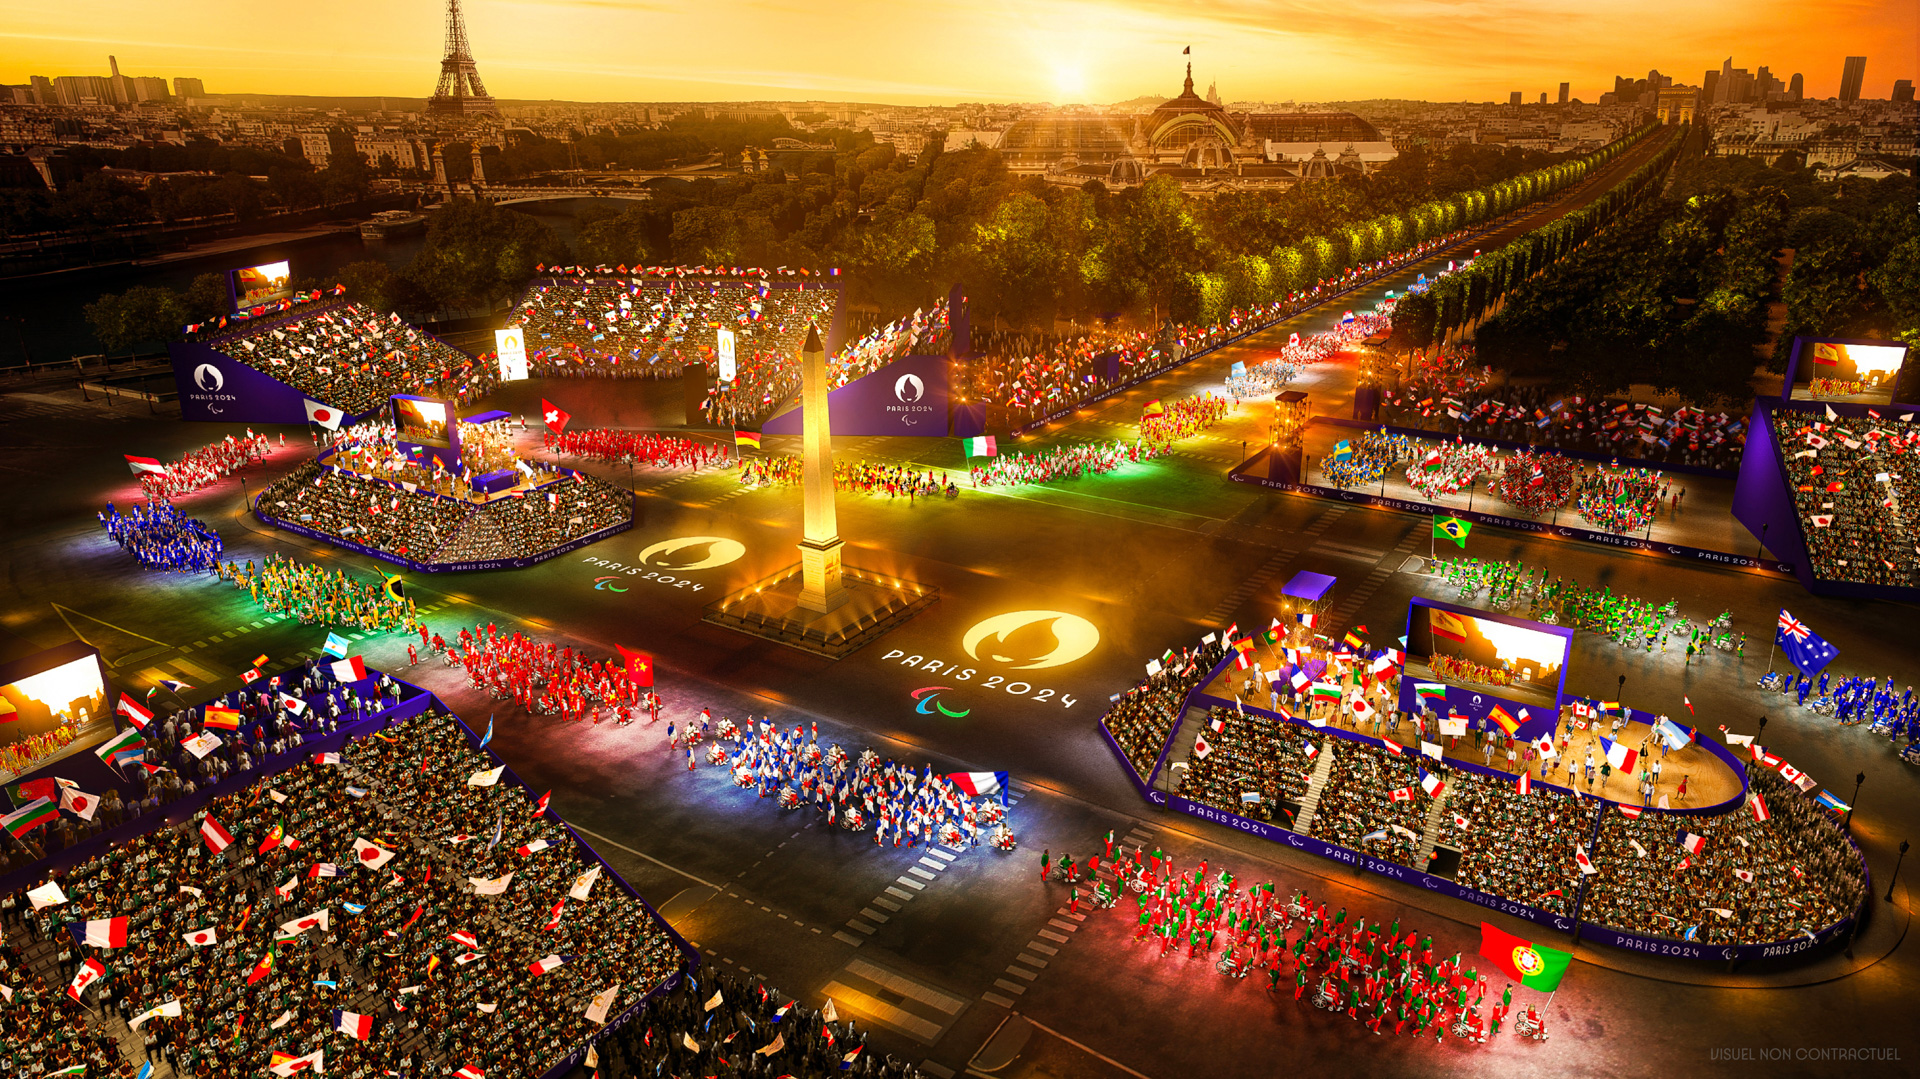 The Athlete Parade in Paris 2024